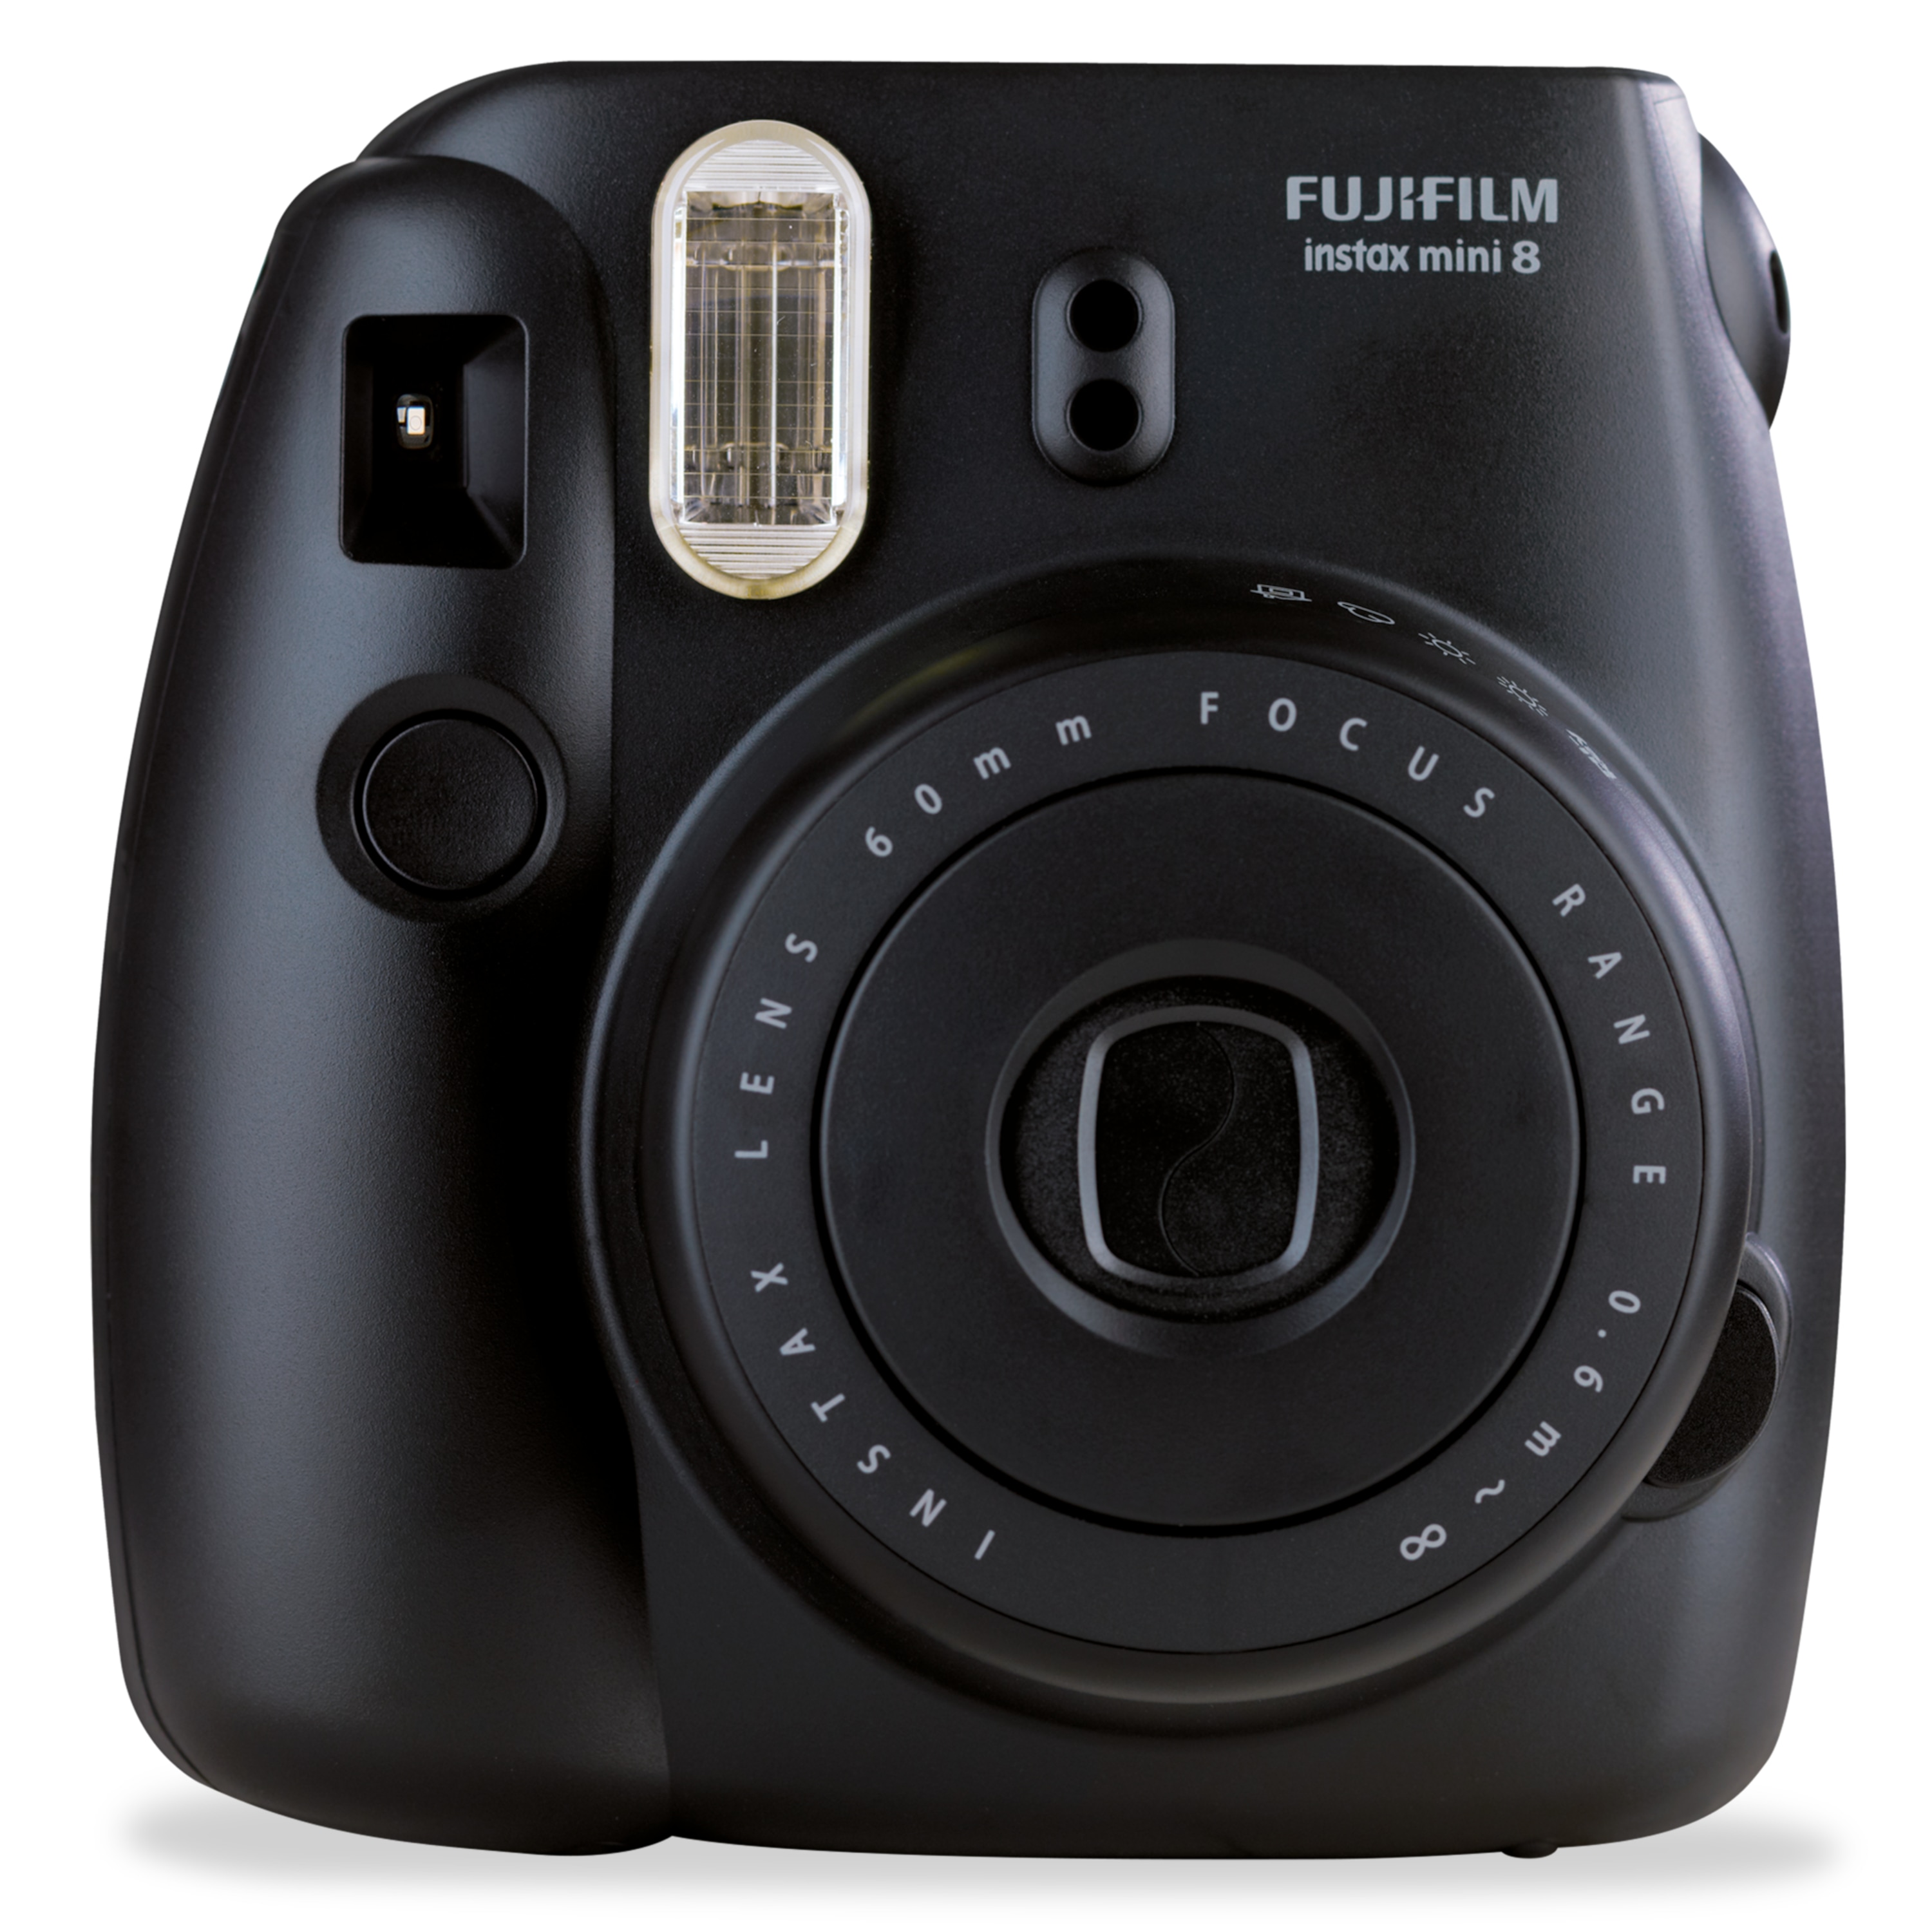 FUJIFILM Instax Mini 8 Sofortbildkamera, kinderleichte Bedienung, manuelle Belichtungseinstellung, High-Key Aufnahmefunktion, Fujinon-Objektiv, integrierter Blitz